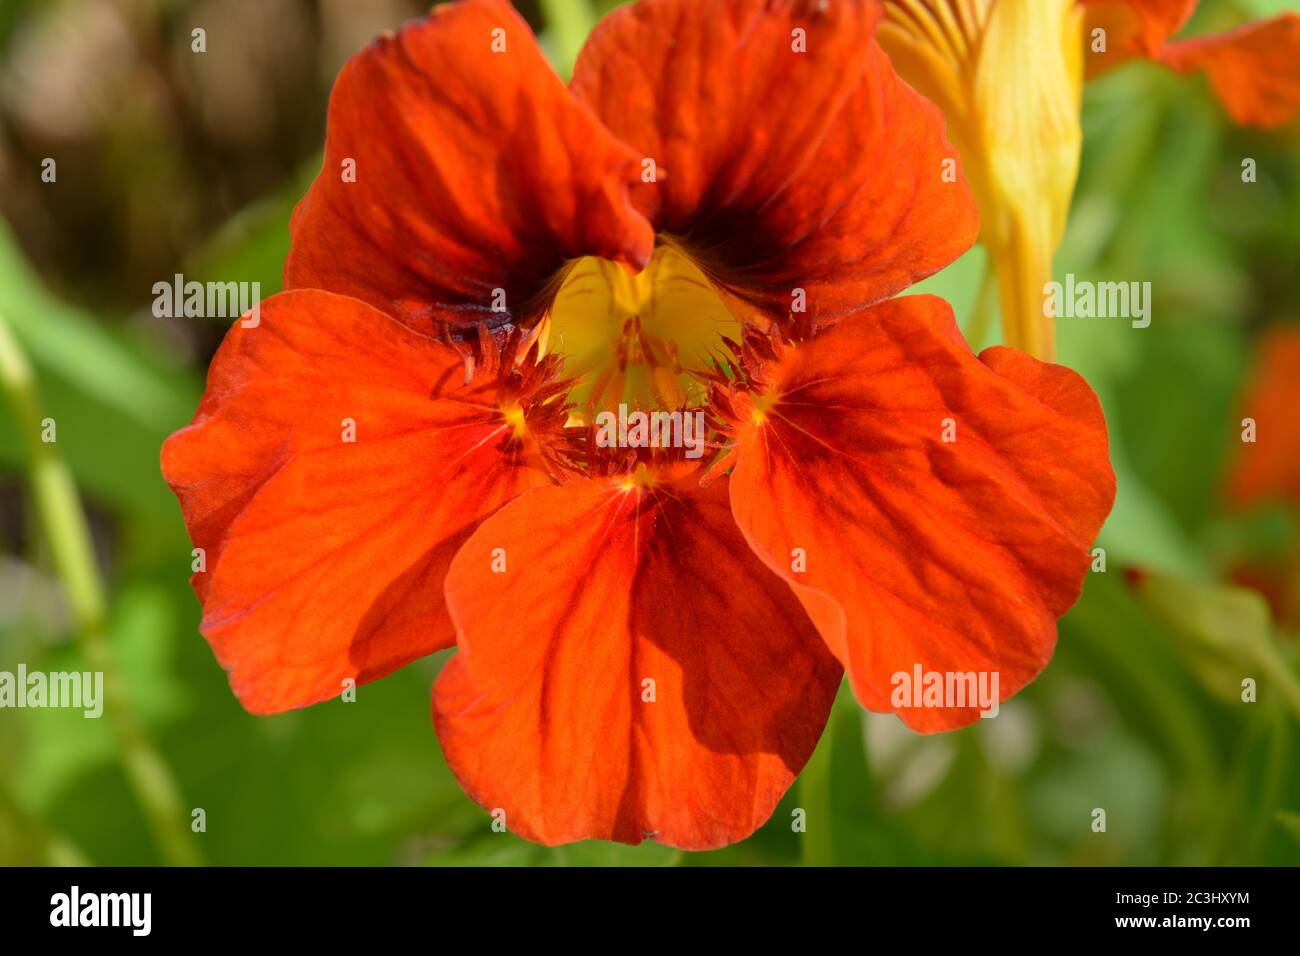 Leuchtend orange Gemeine Kapuzinerkresse Blume, Edelstein-Mischung, wächst in einem Sommergarten Stockfoto